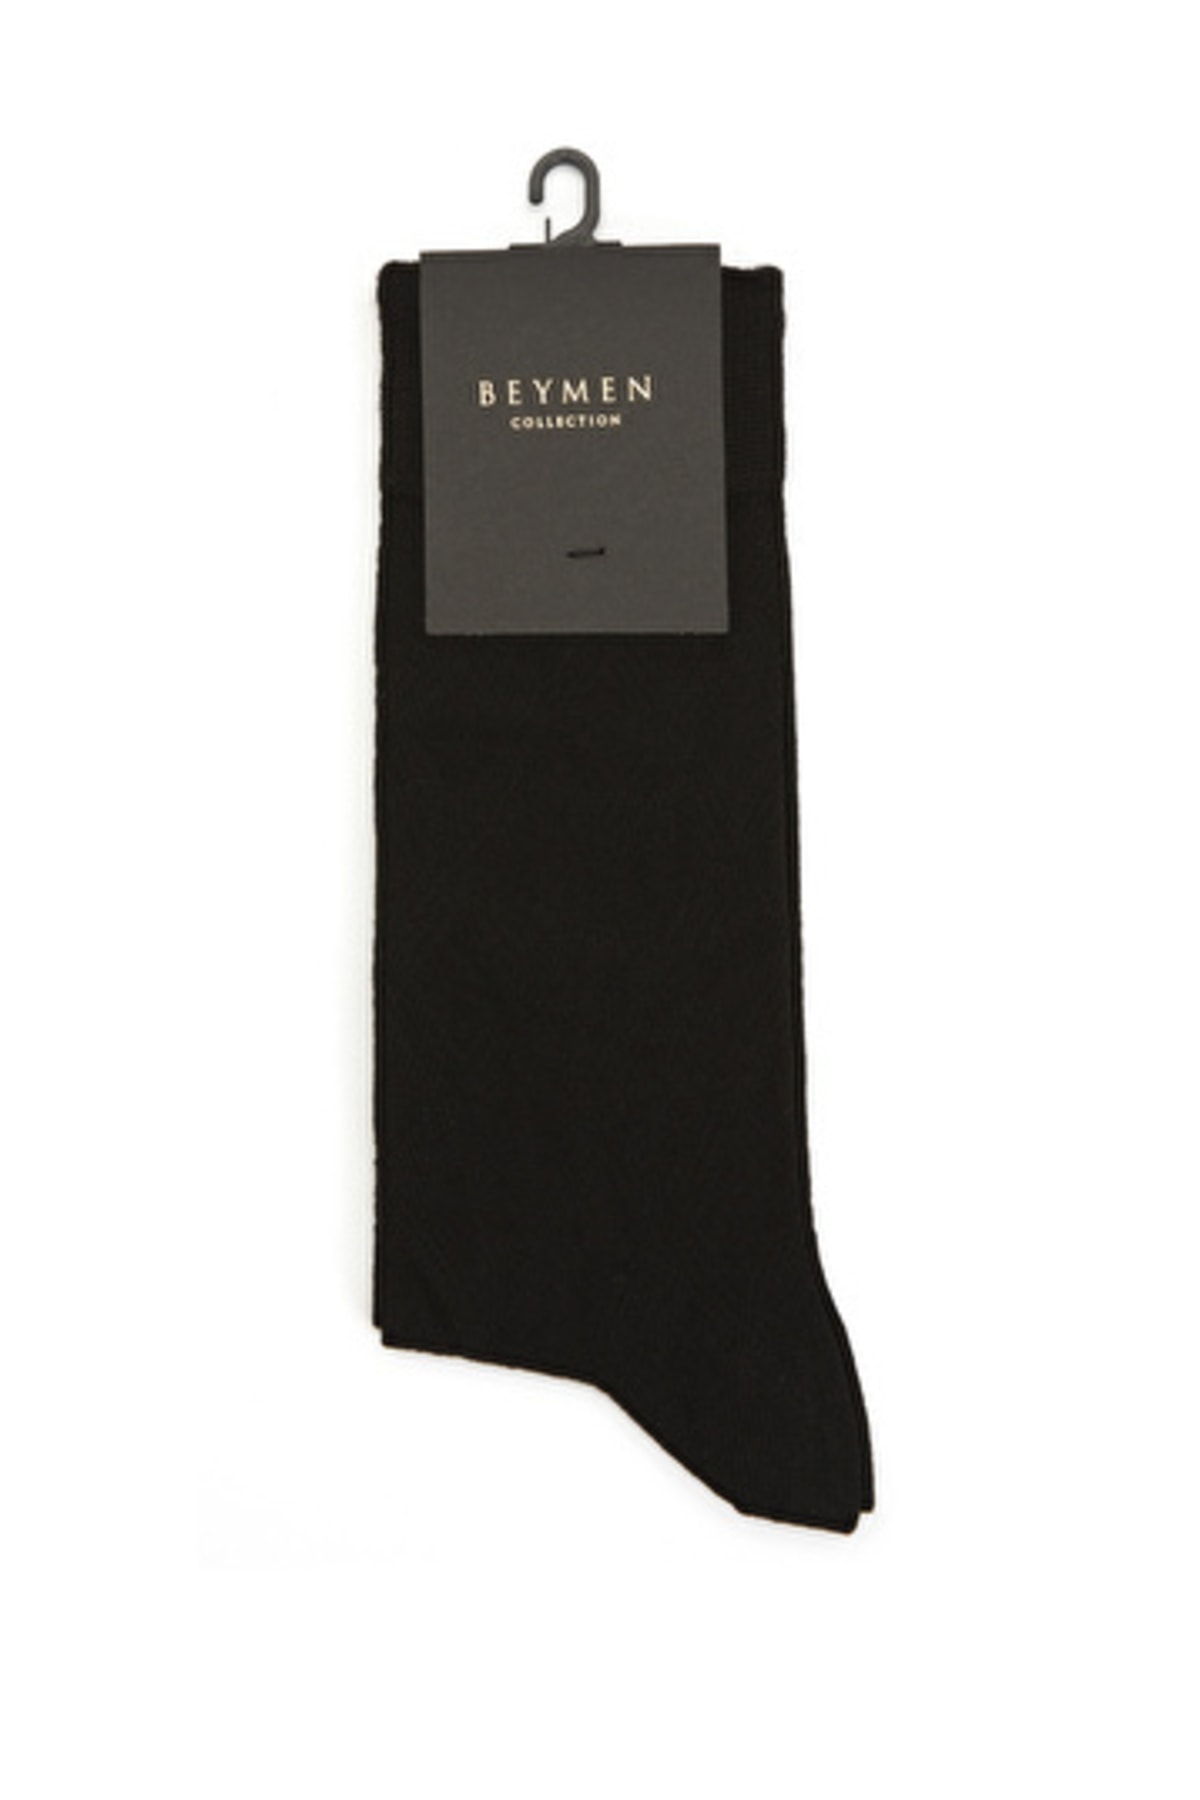 Beymen Collection Siyah Karo Desenli Erkek Bambu Çorap